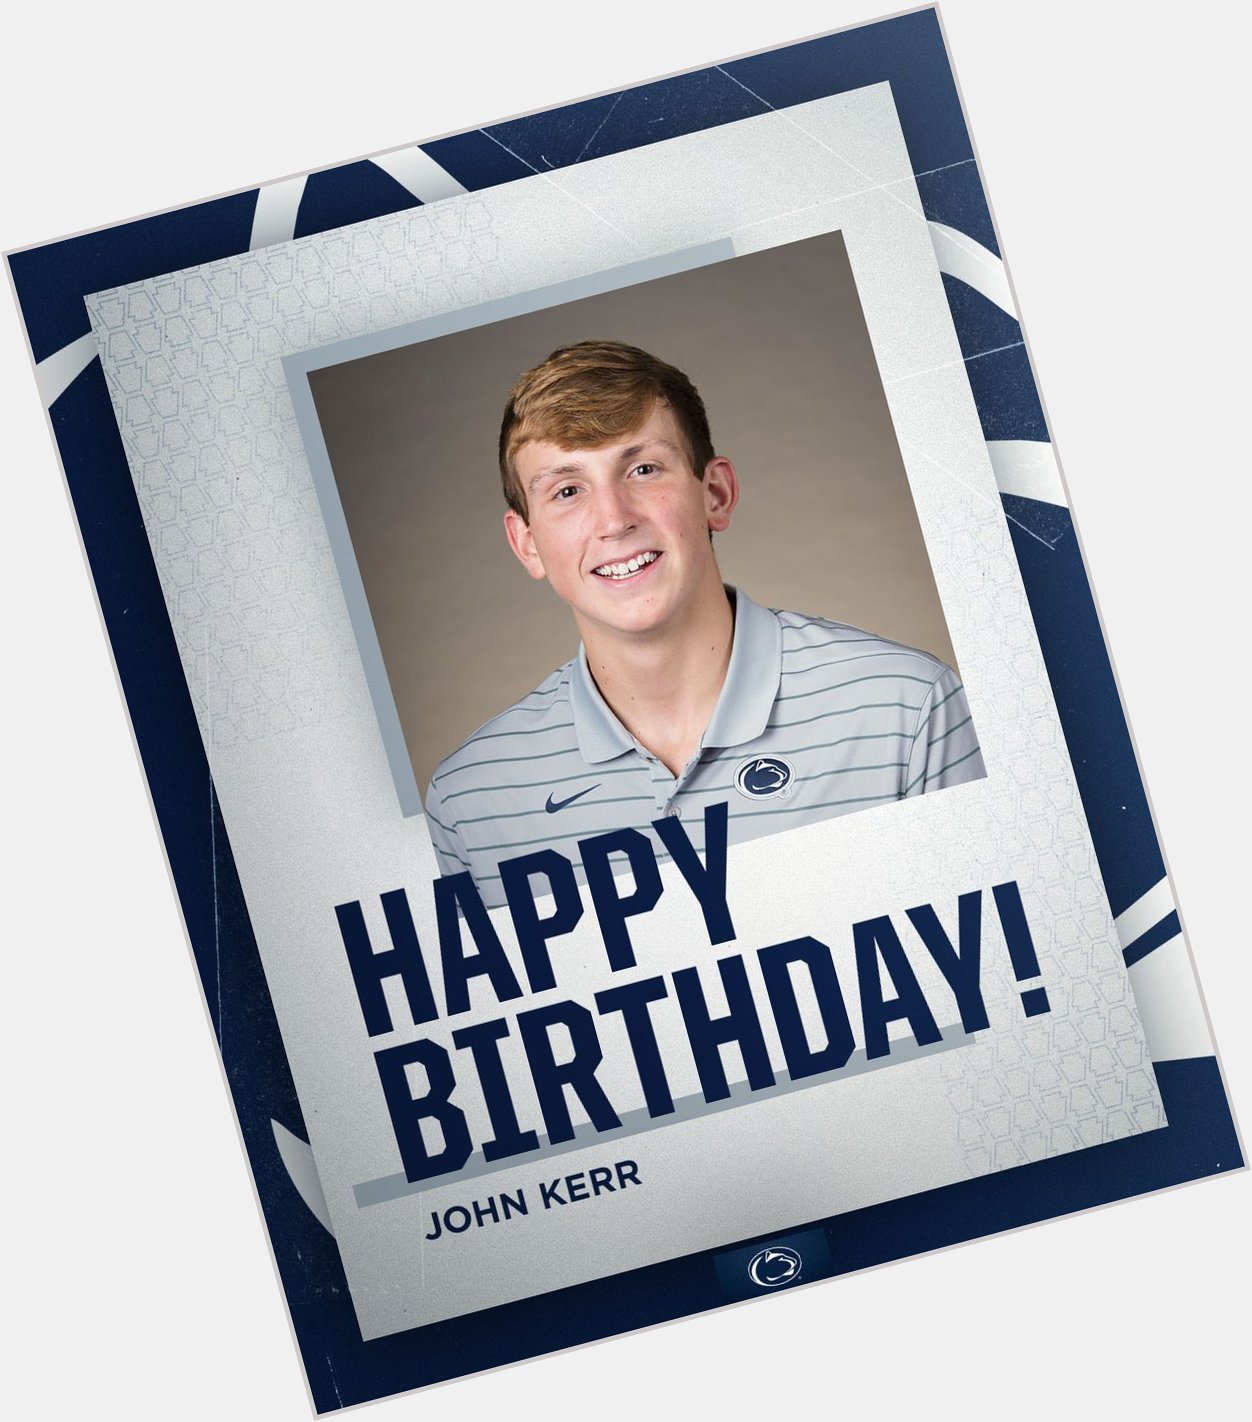 Happy birthday, John Kerr! 